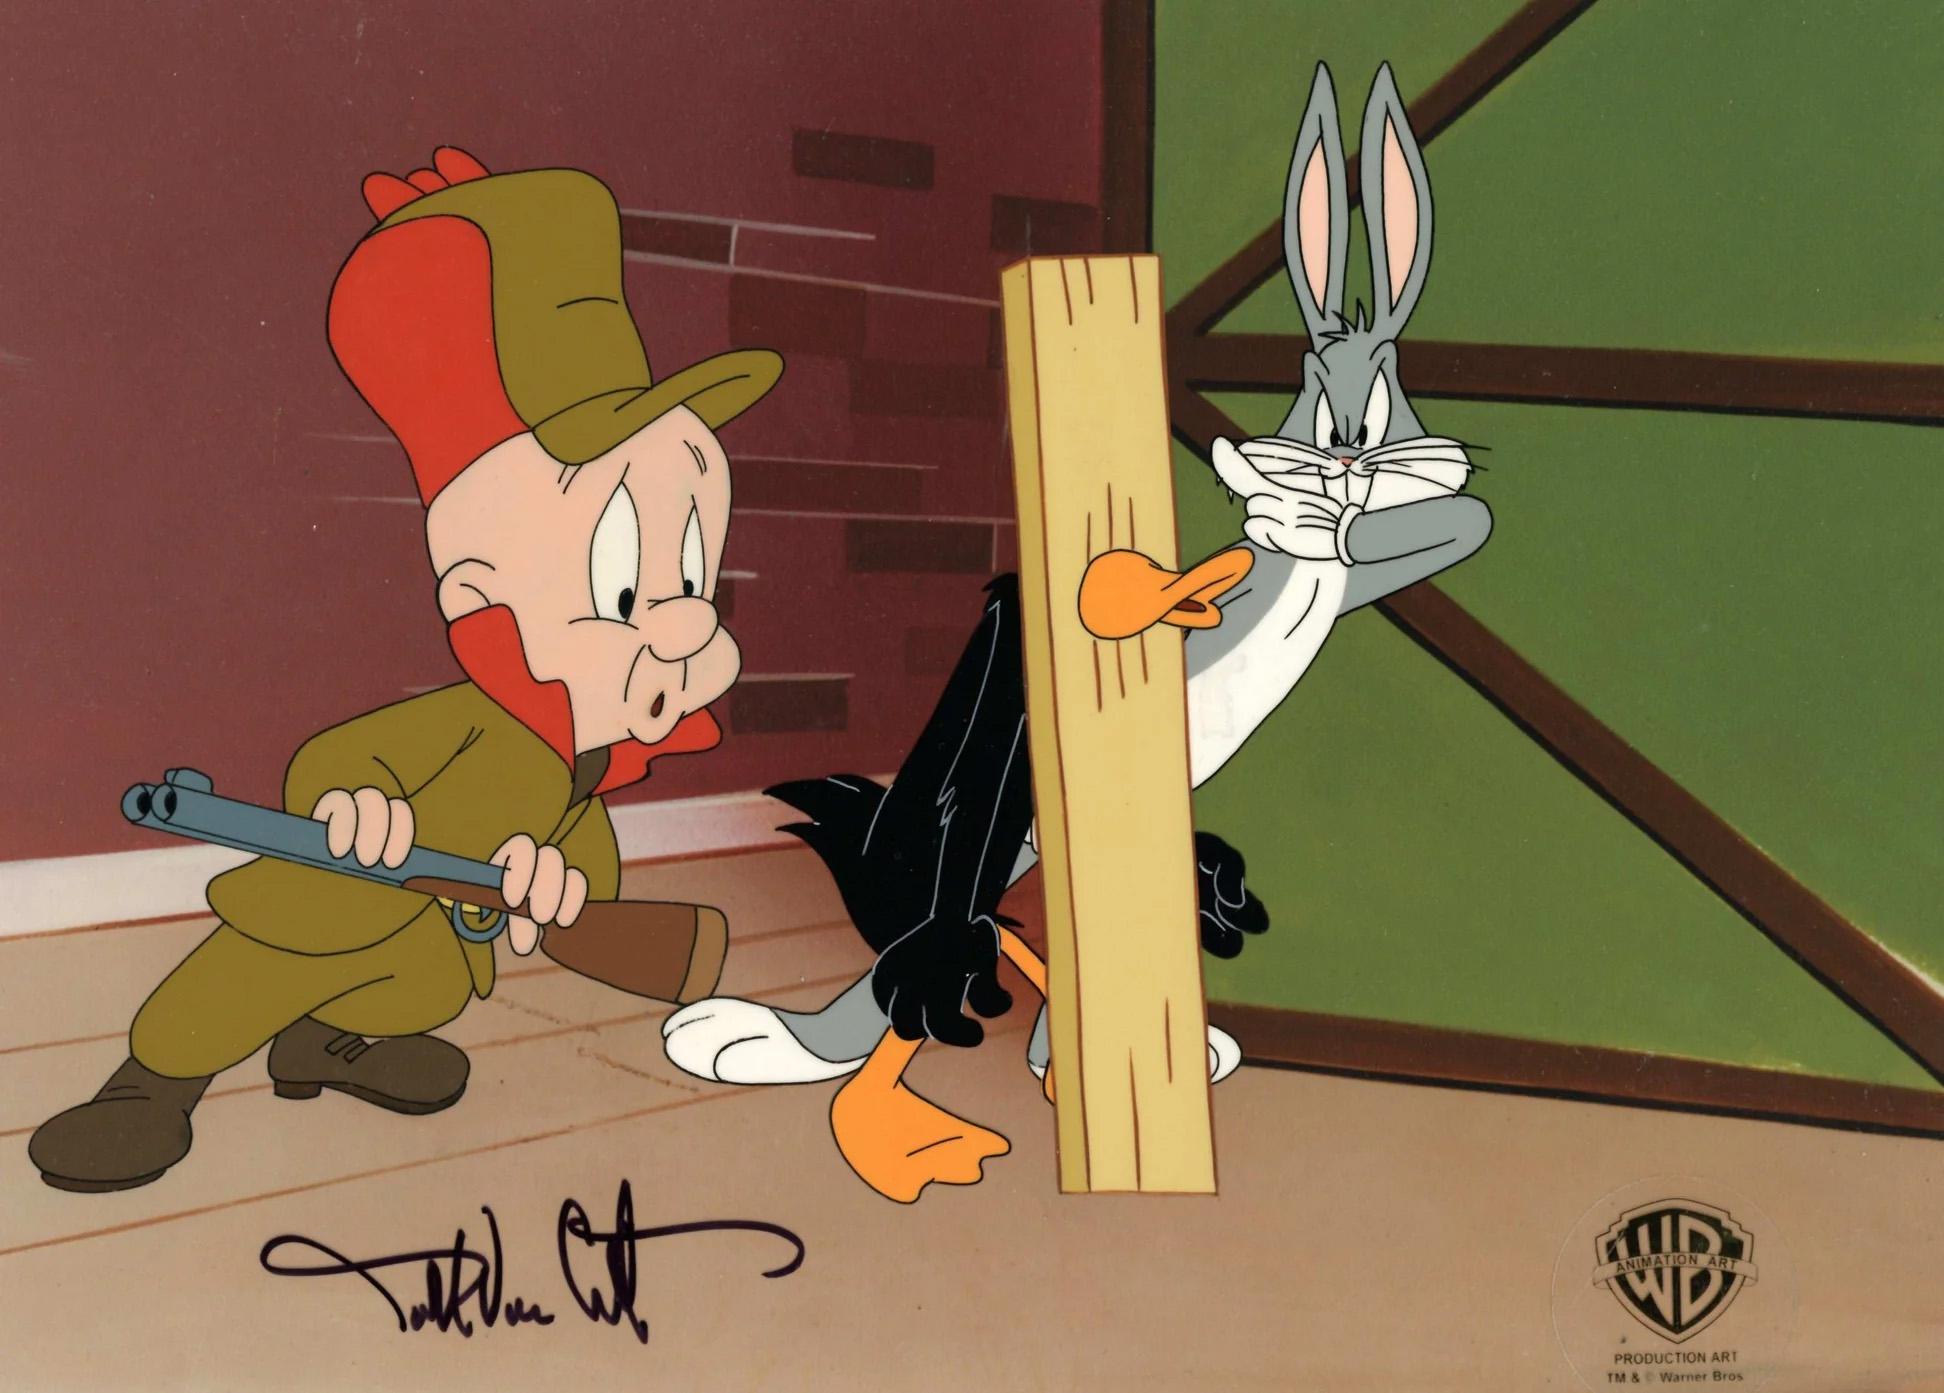 Looney Tunes Prod d'origine Cel signé par Darrel Van Citters : Bugs, Daffy, Elmer - Art de Darrell Van Citters